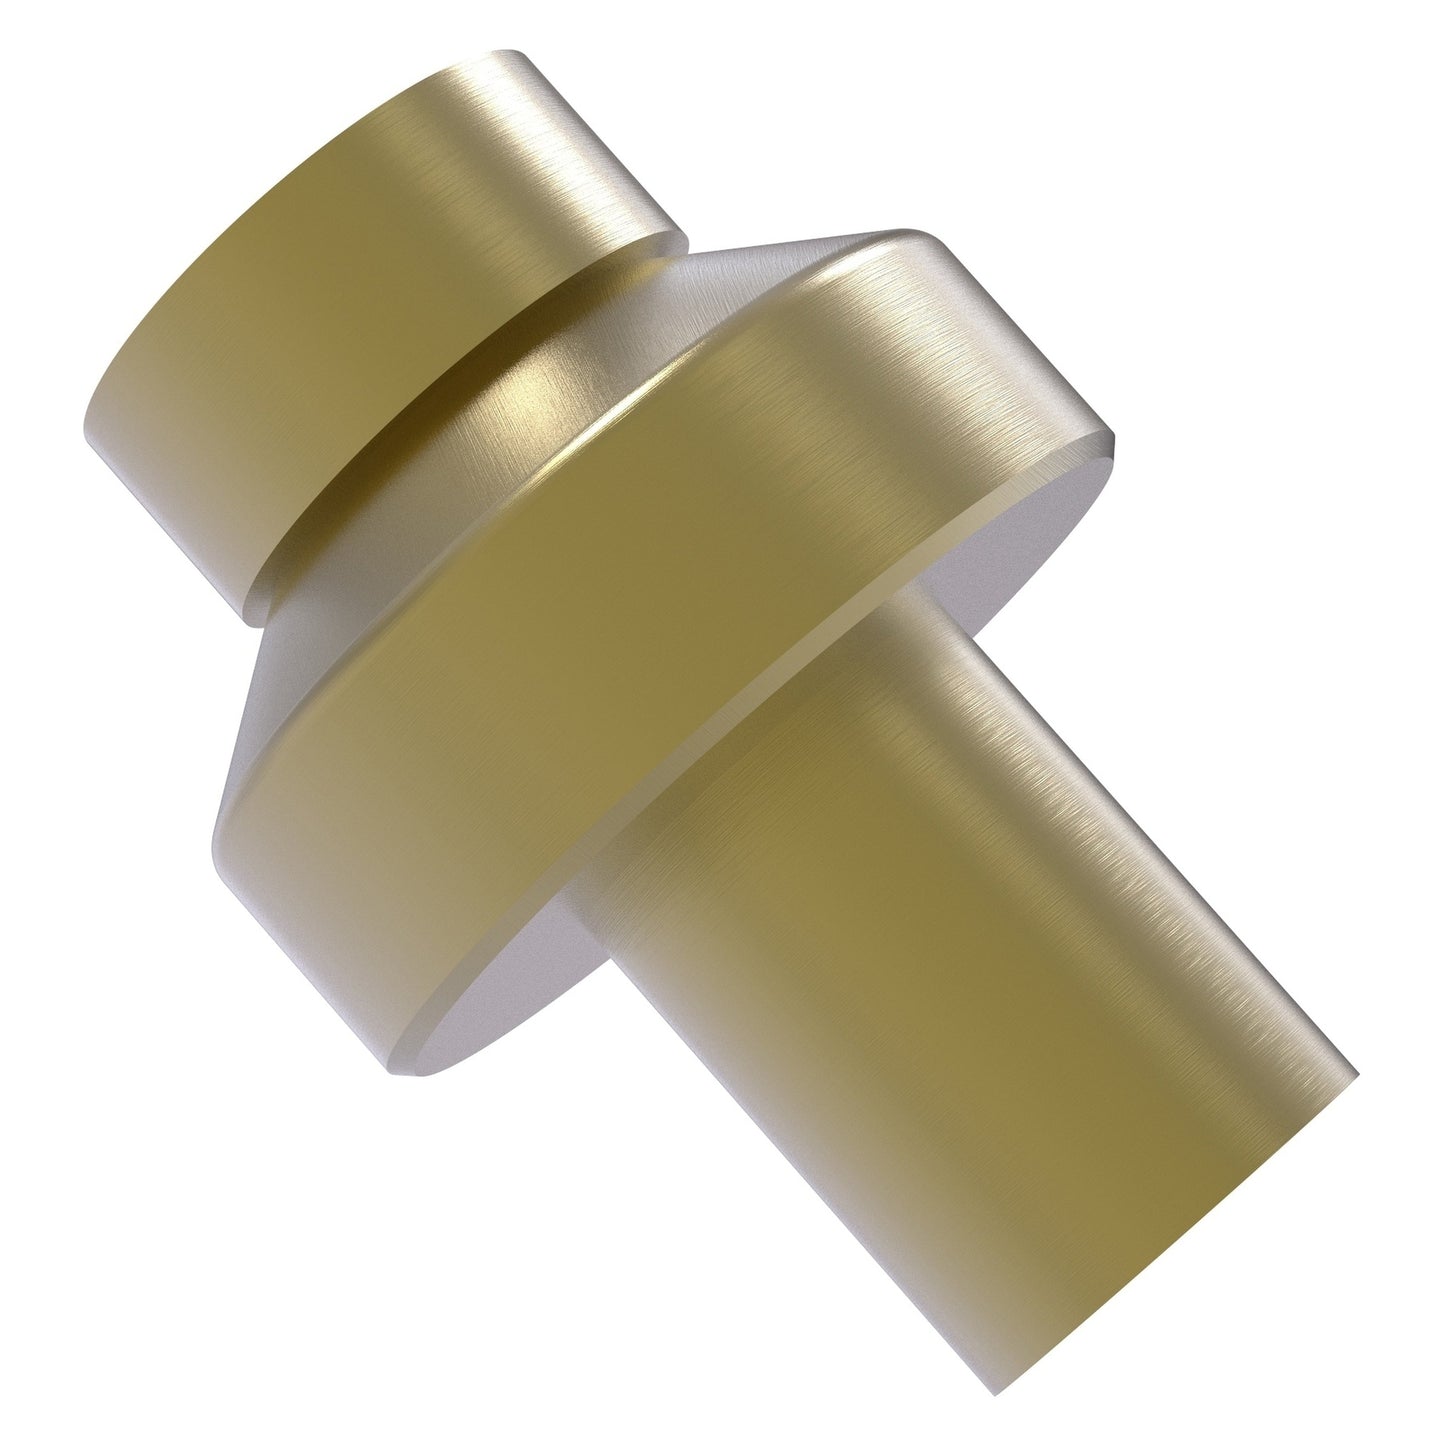 Allied Brass 108 1" Satin Brass Solid Brass Cabinet Knob